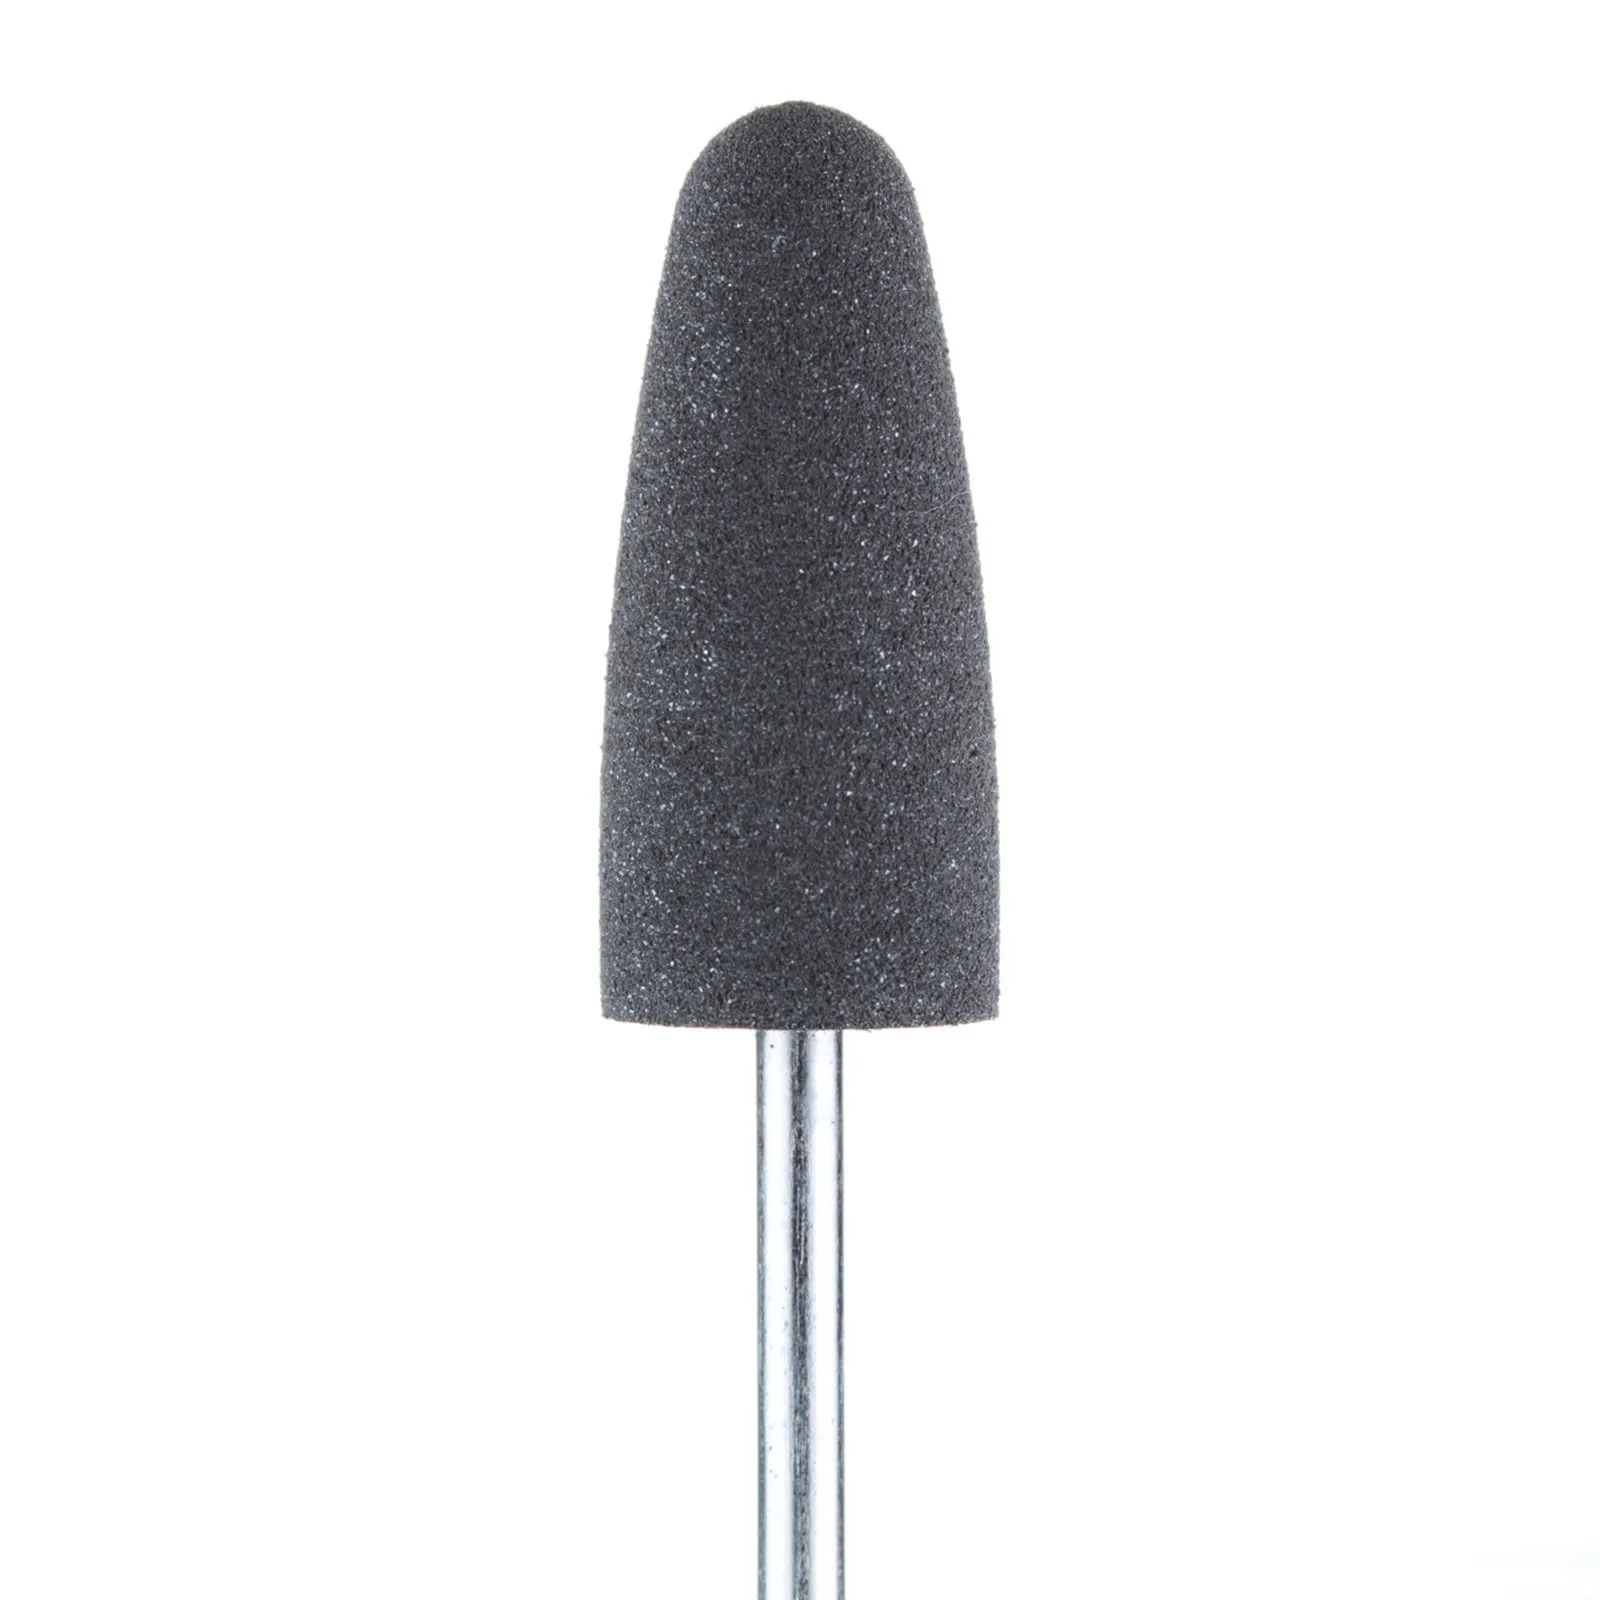 Полировщик большой закругленный конус силиконовый темно-серый (диаметр 10 мм)